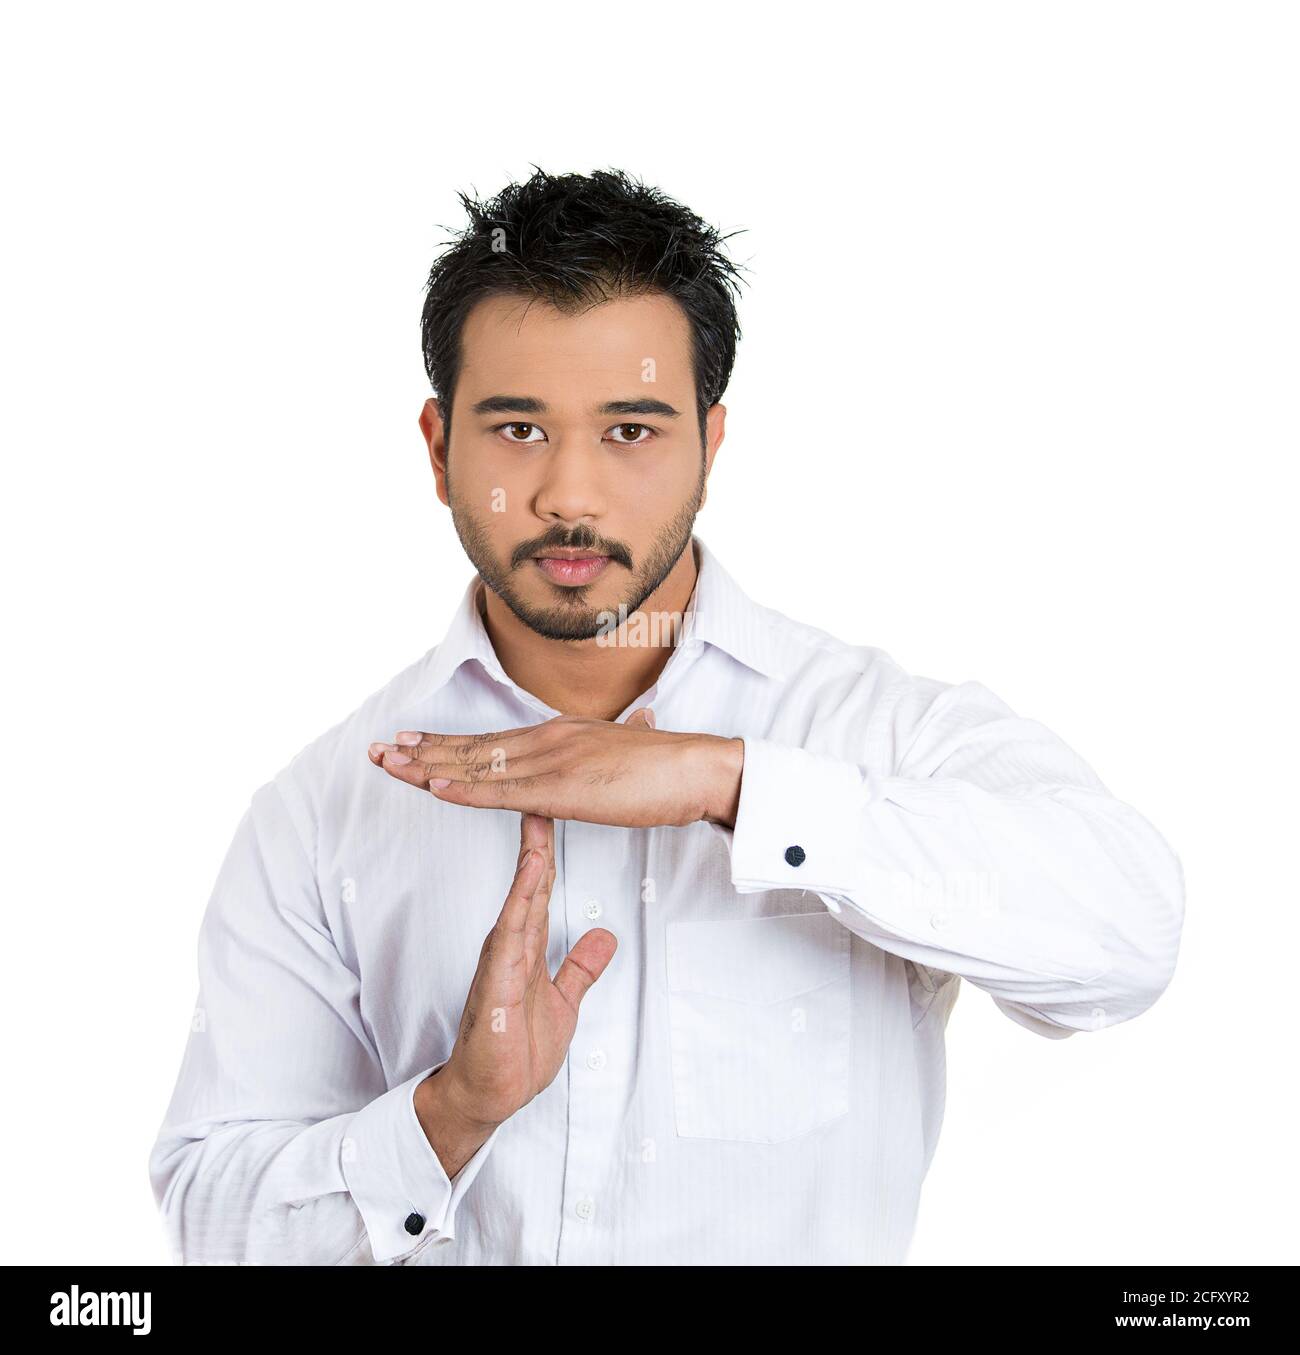 Nahaufnahme Porträt von schönen jungen ernsten Mann zeigt eine Auszeit Geste mit Händen, isoliert auf weißem Hintergrund. Negative menschliche Emotionen, Gesichts ex Stockfoto